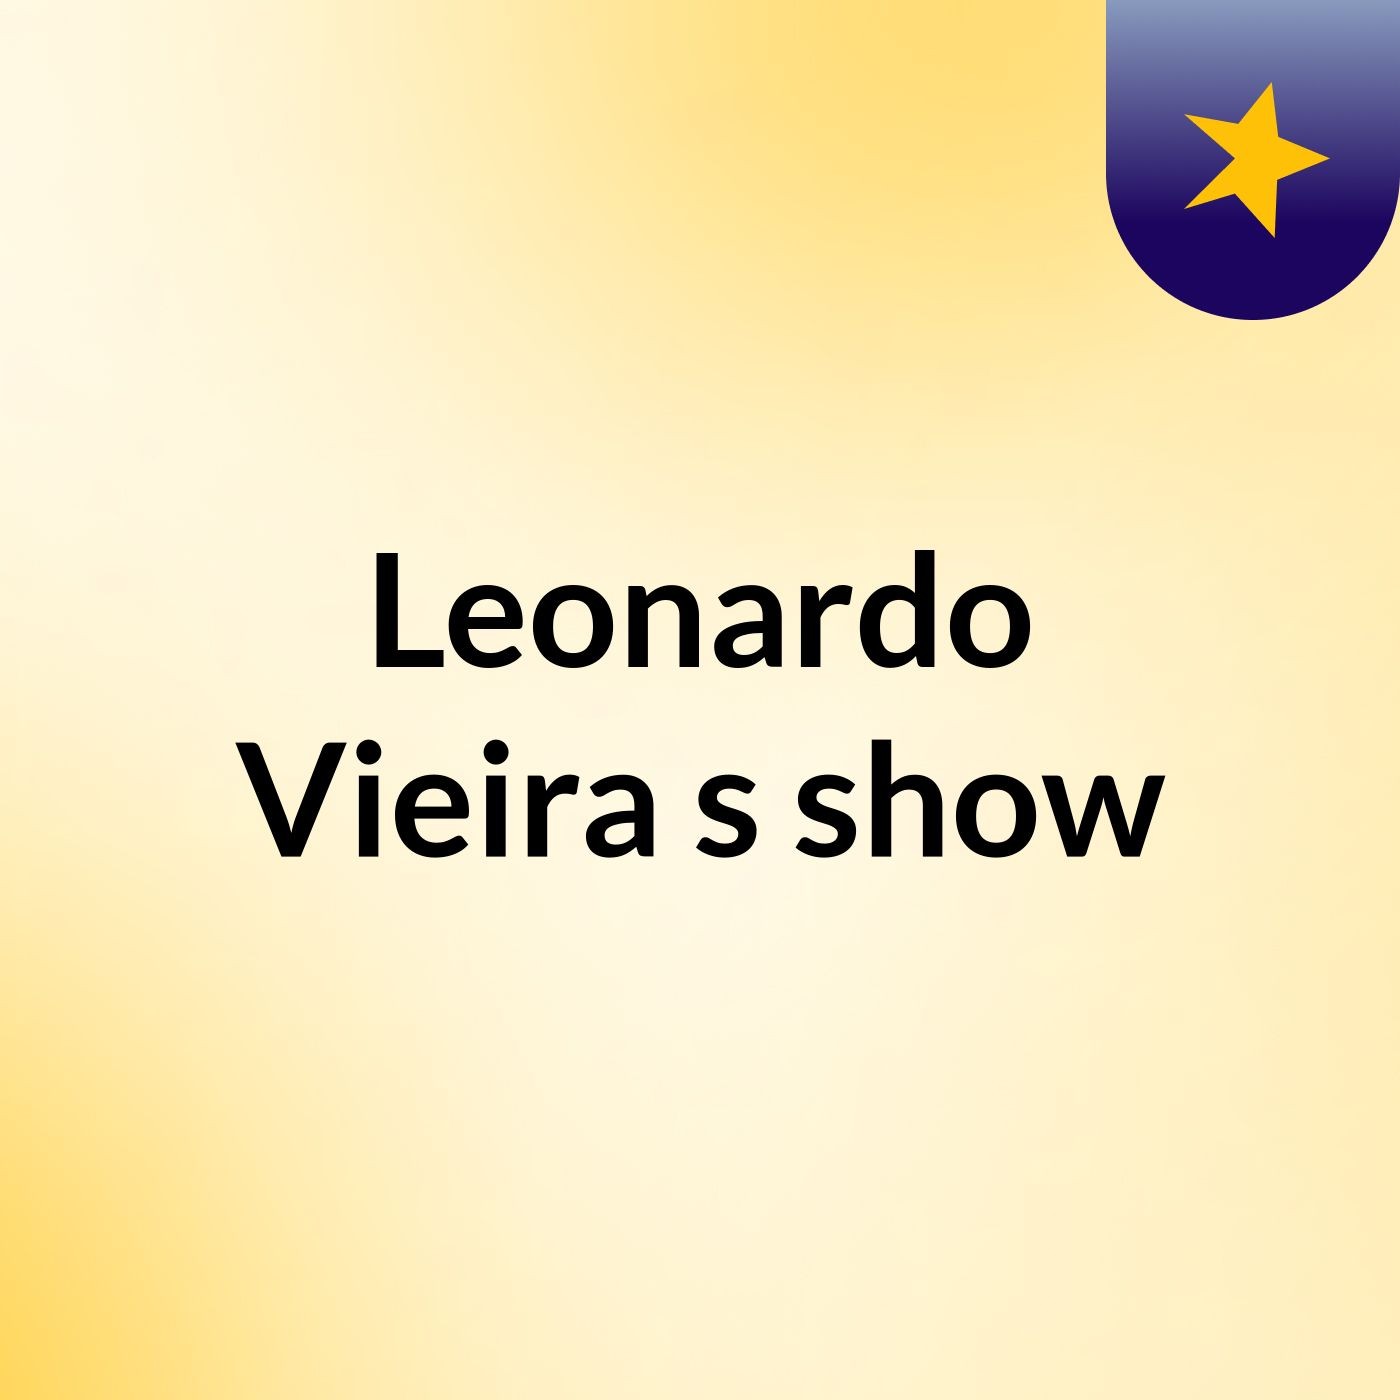 Leonardo Vieira's show